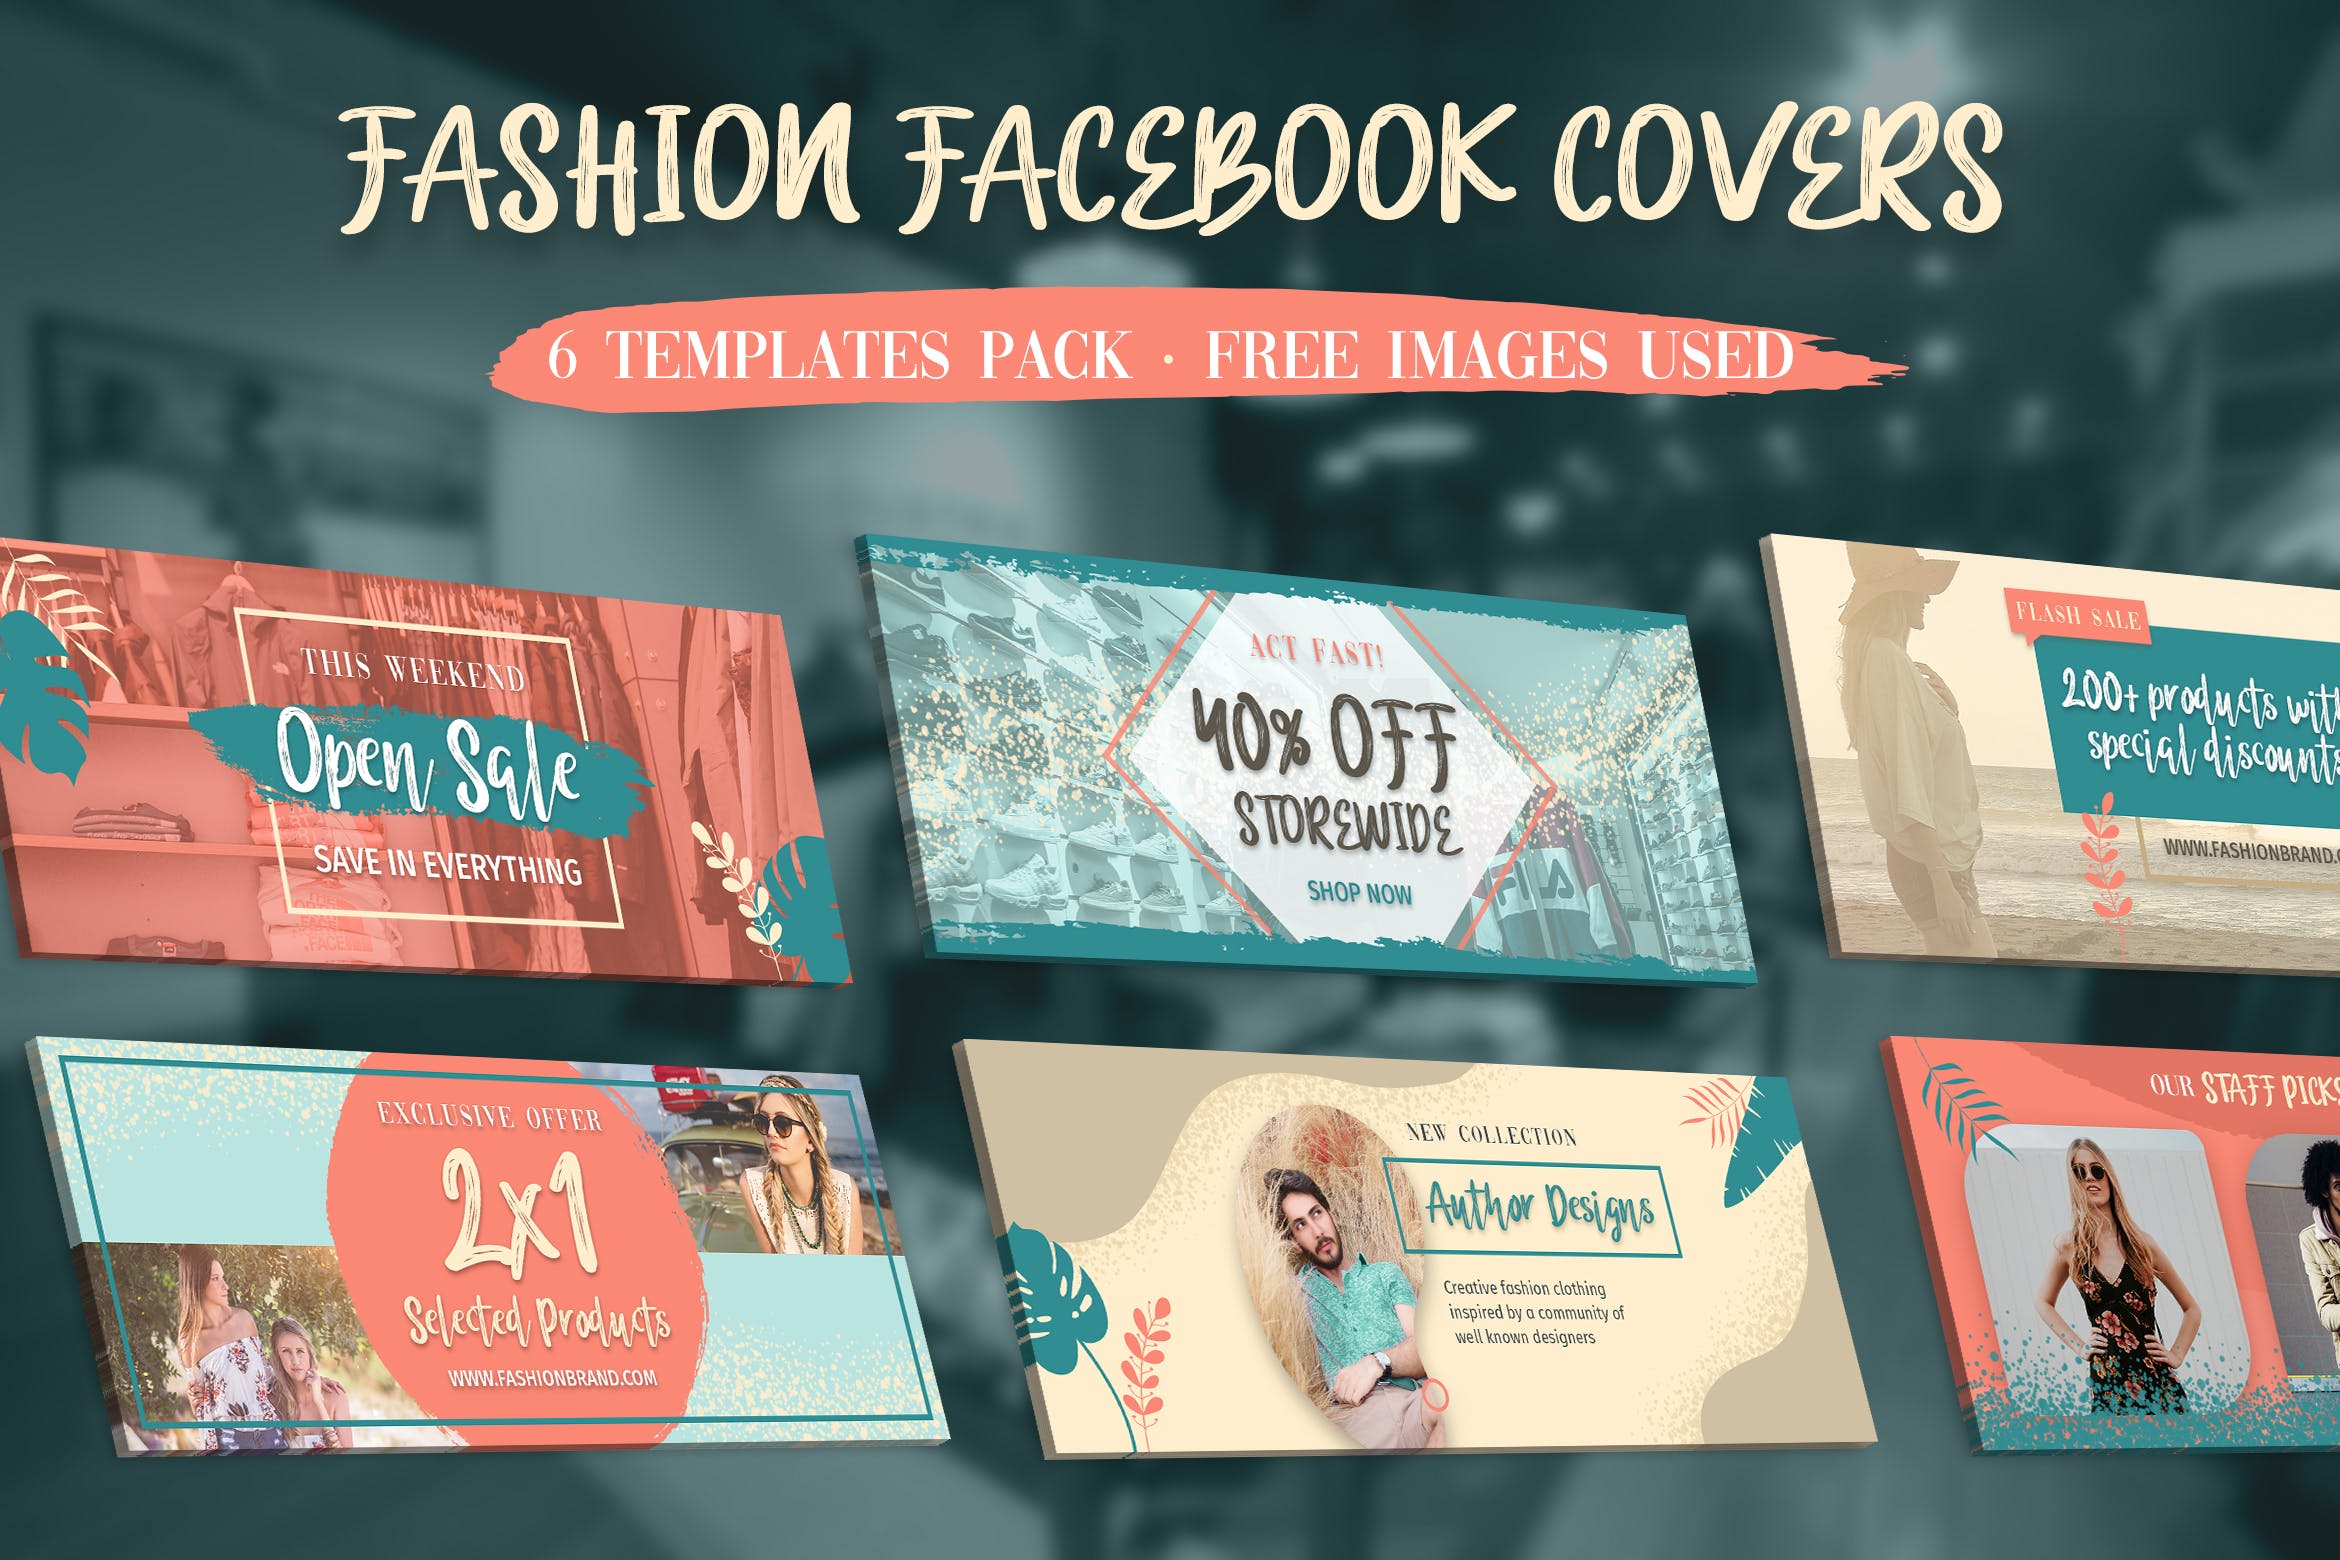 时尚品牌推广Facebook主页封面设计模板素材库精选 Facebook Covers插图